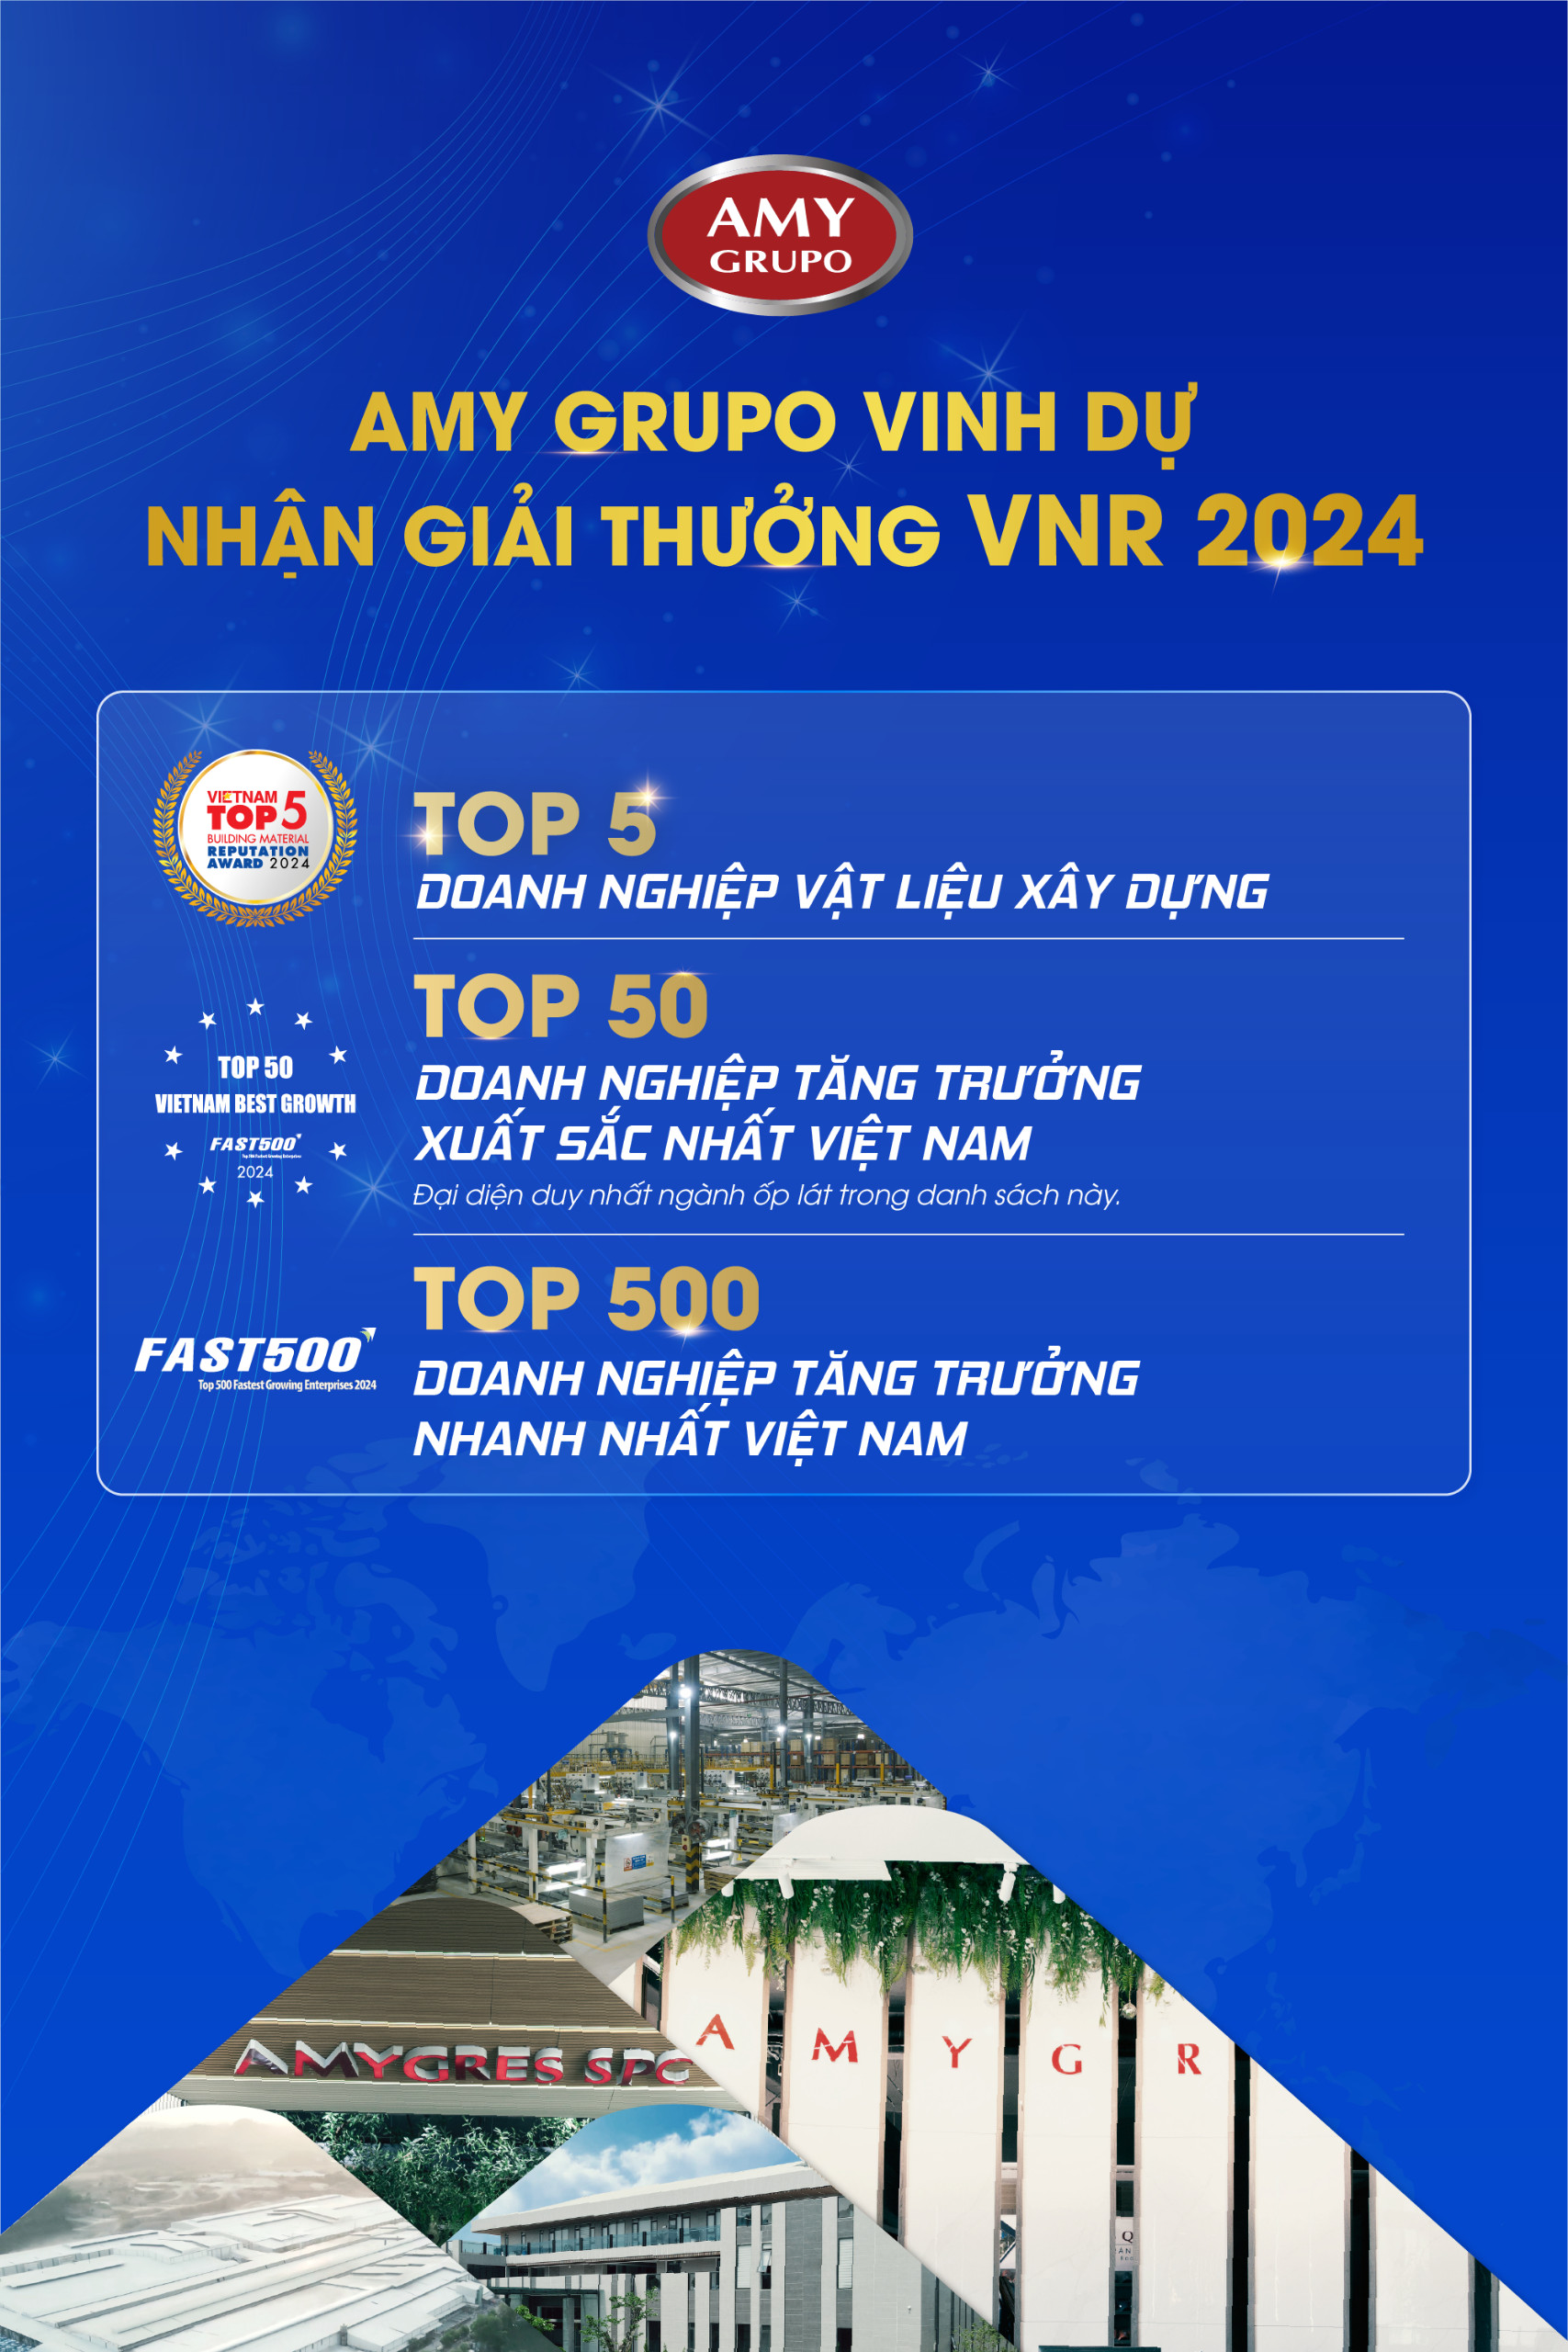 AMY GRUPO năm thứ 3 liên tiếp lọt Top 500 doanh nghiệp tăng trưởng nhanh nhất Việt Nam- Ảnh 1.